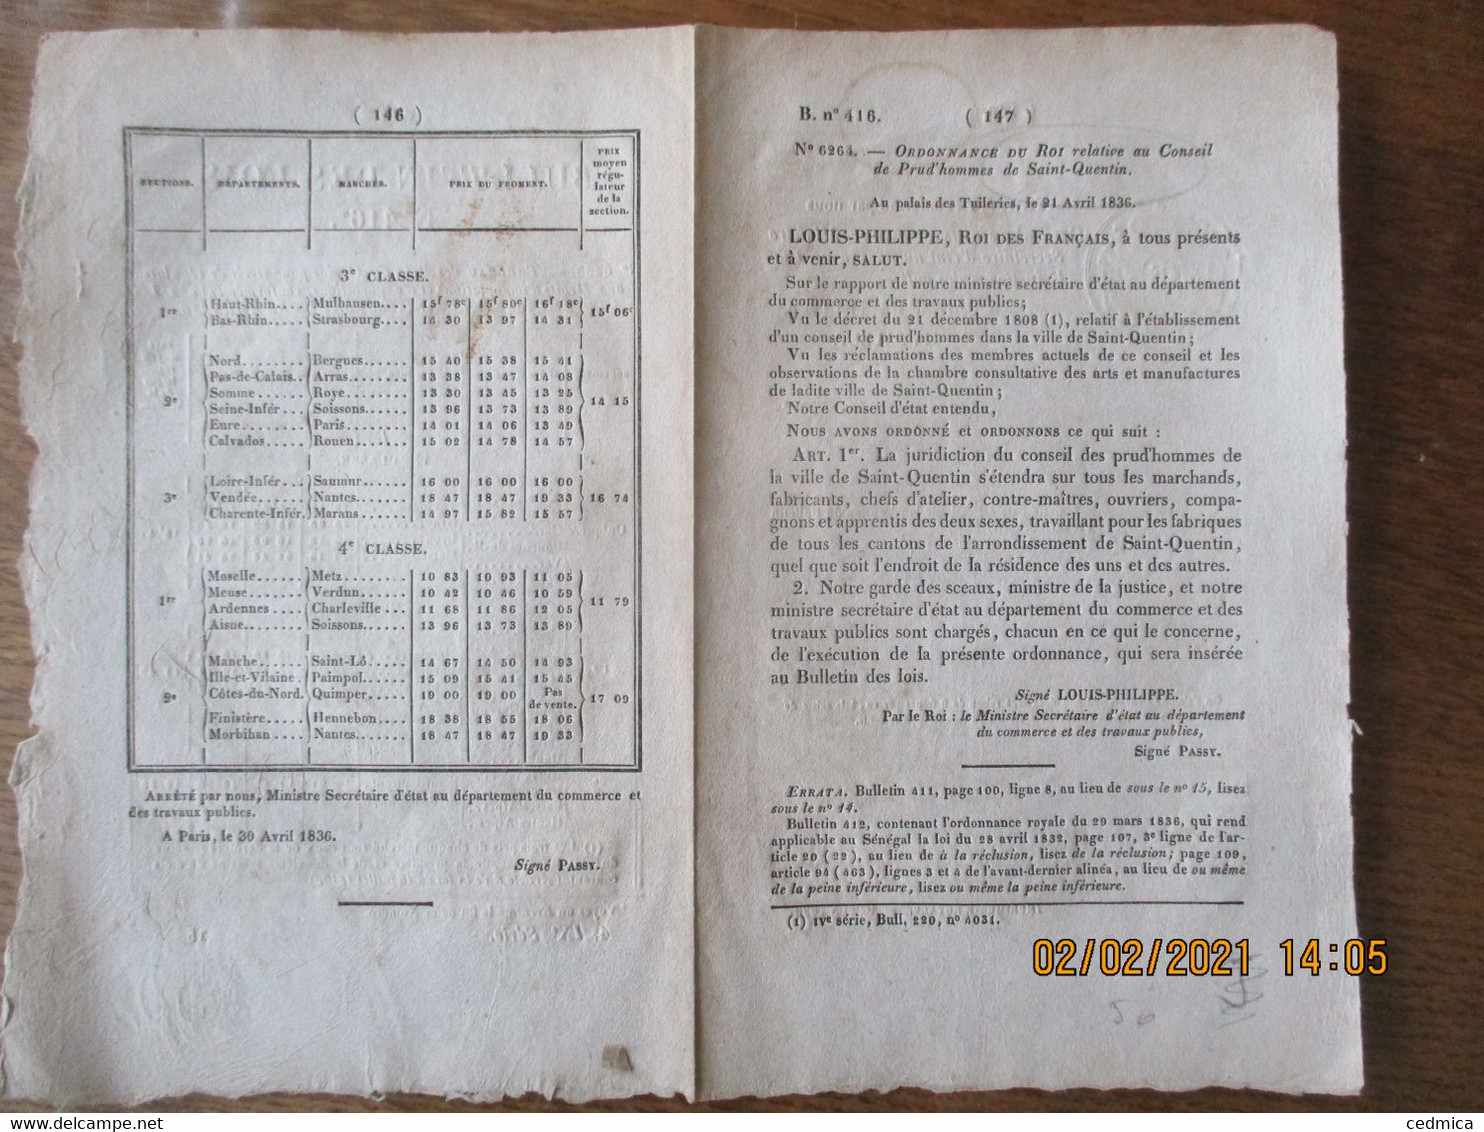 BULLETIN DES LOIS N° 416 DU 1er MAI 1836 ORDONNANCE DU ROI RELATIVE AU CONSEIL DE PRUD'HOMMES DE SAINT-QUENTIN,TABLEAU D - Décrets & Lois